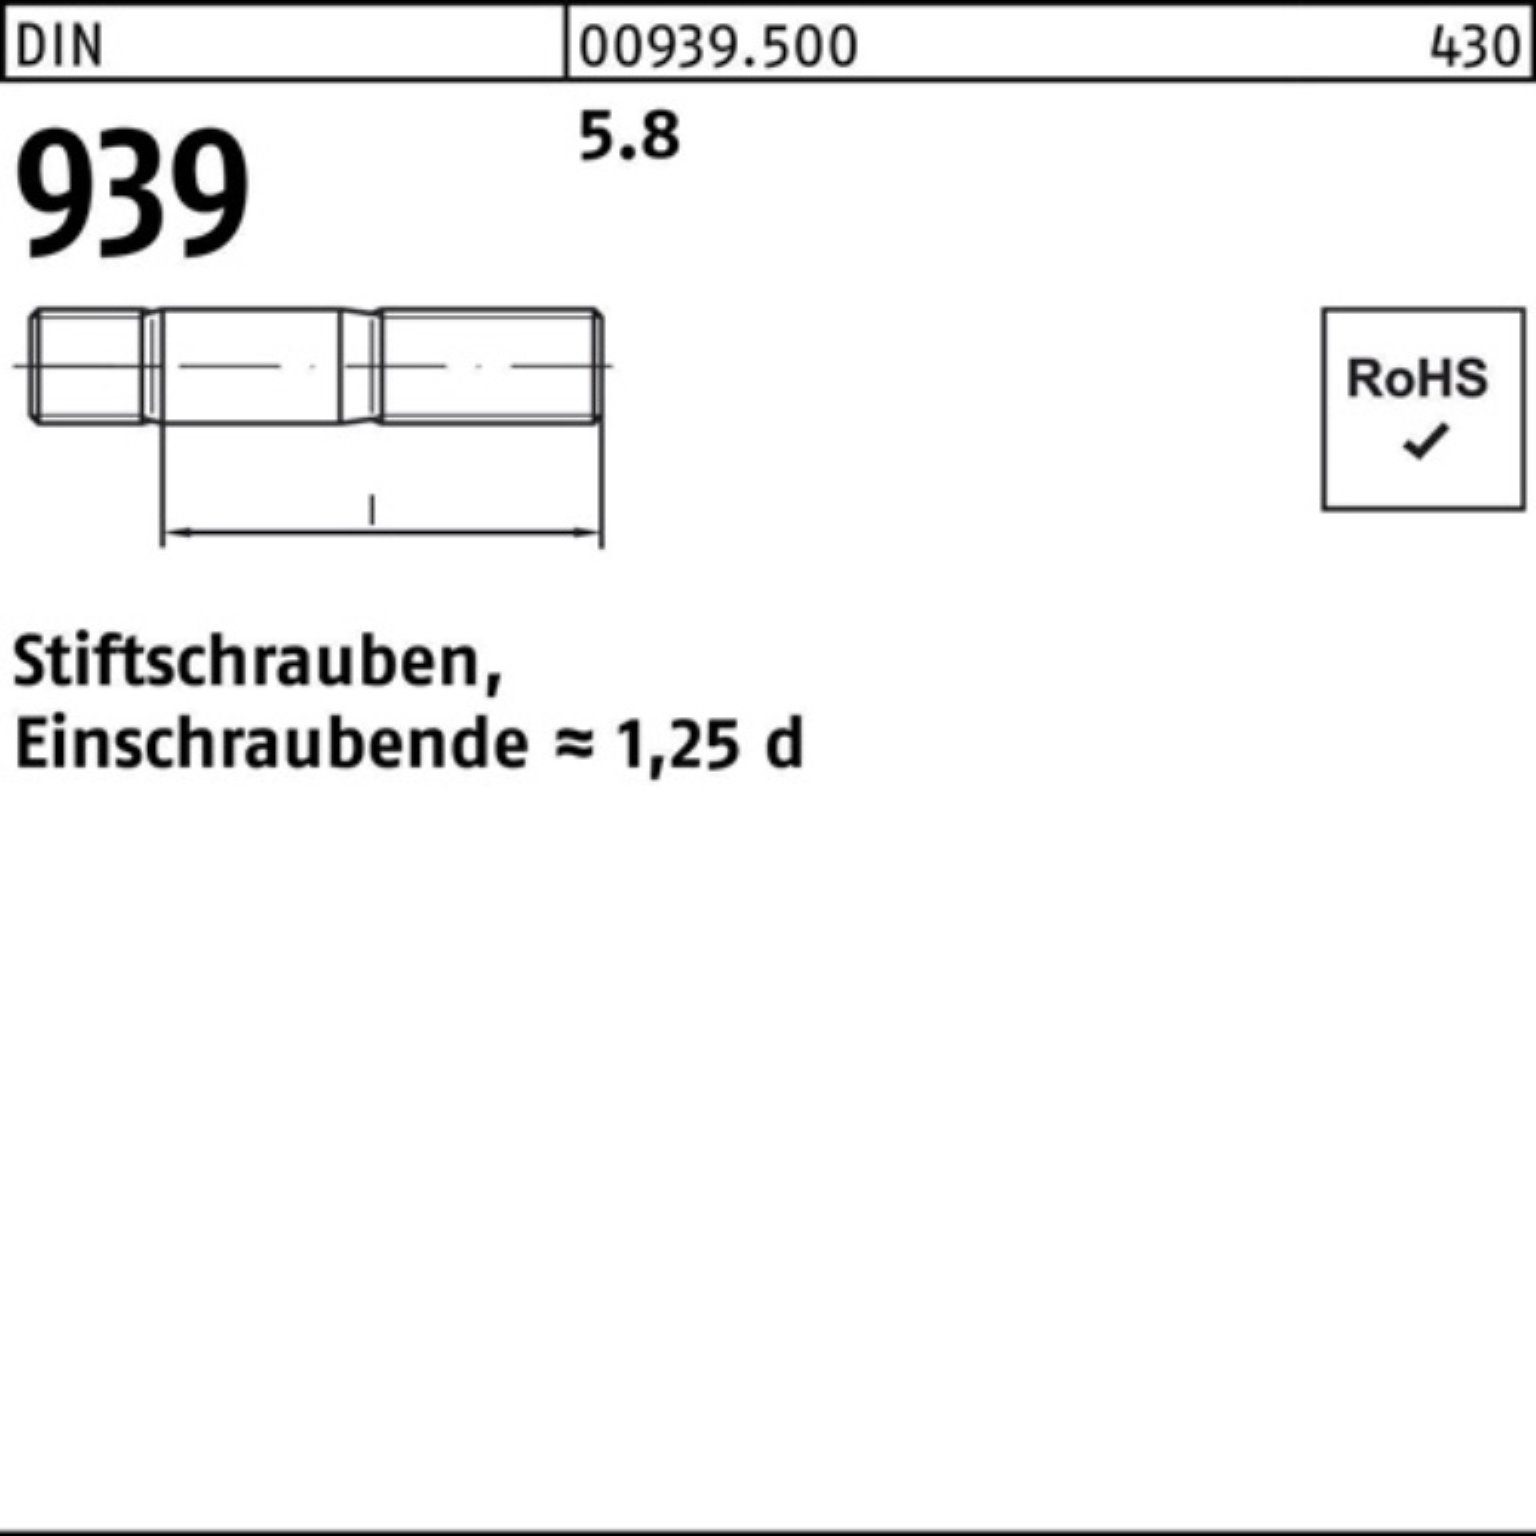 5.8 DIN M6x S 100er 35 Pack Reyher Stiftschraube 939 100 Einschraubende=1,25d Stiftschraube